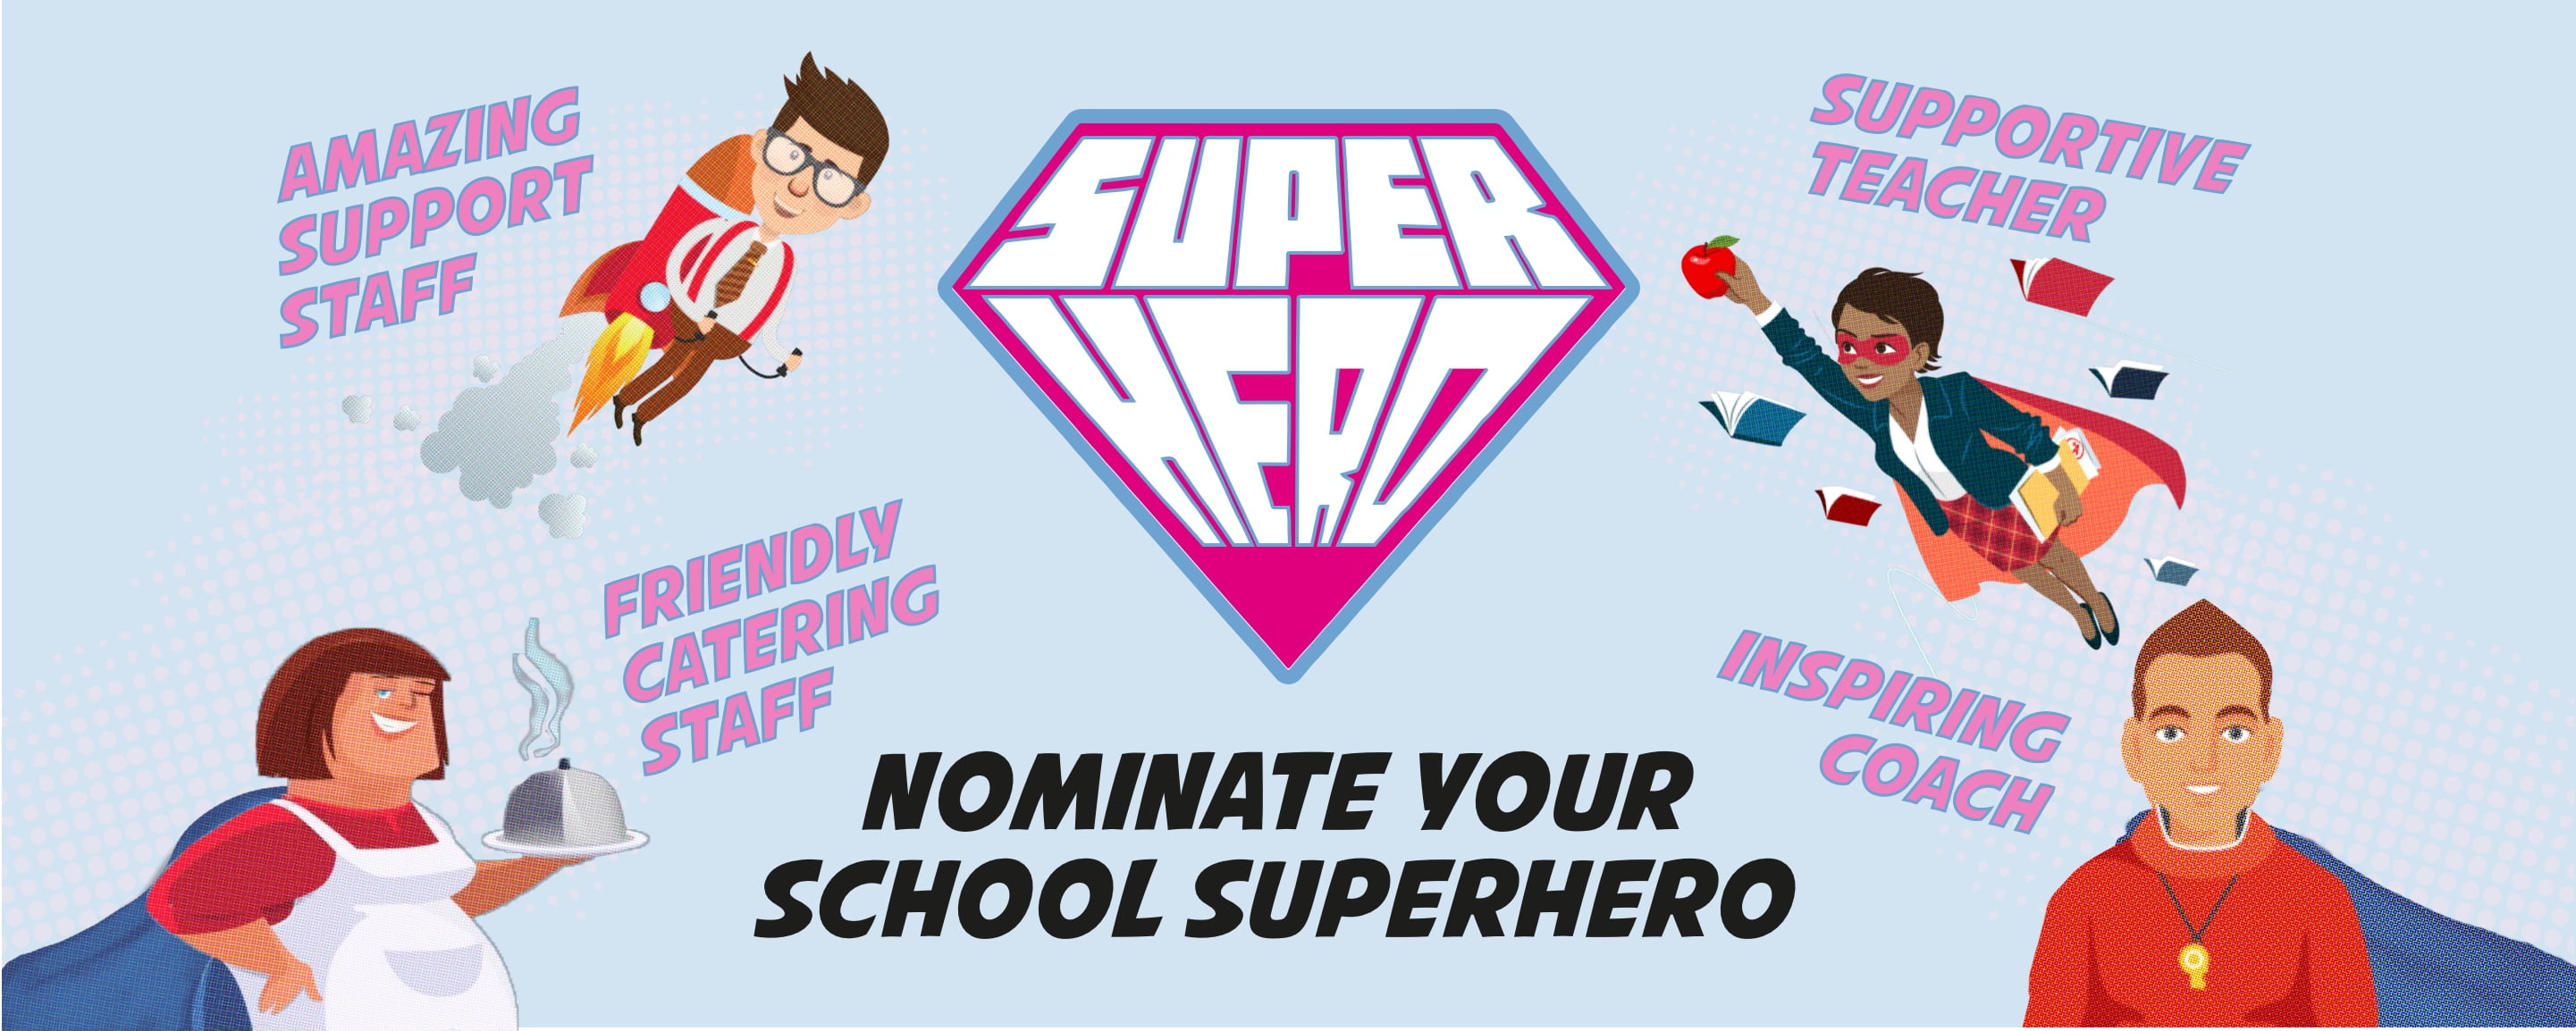 School Superhero banner